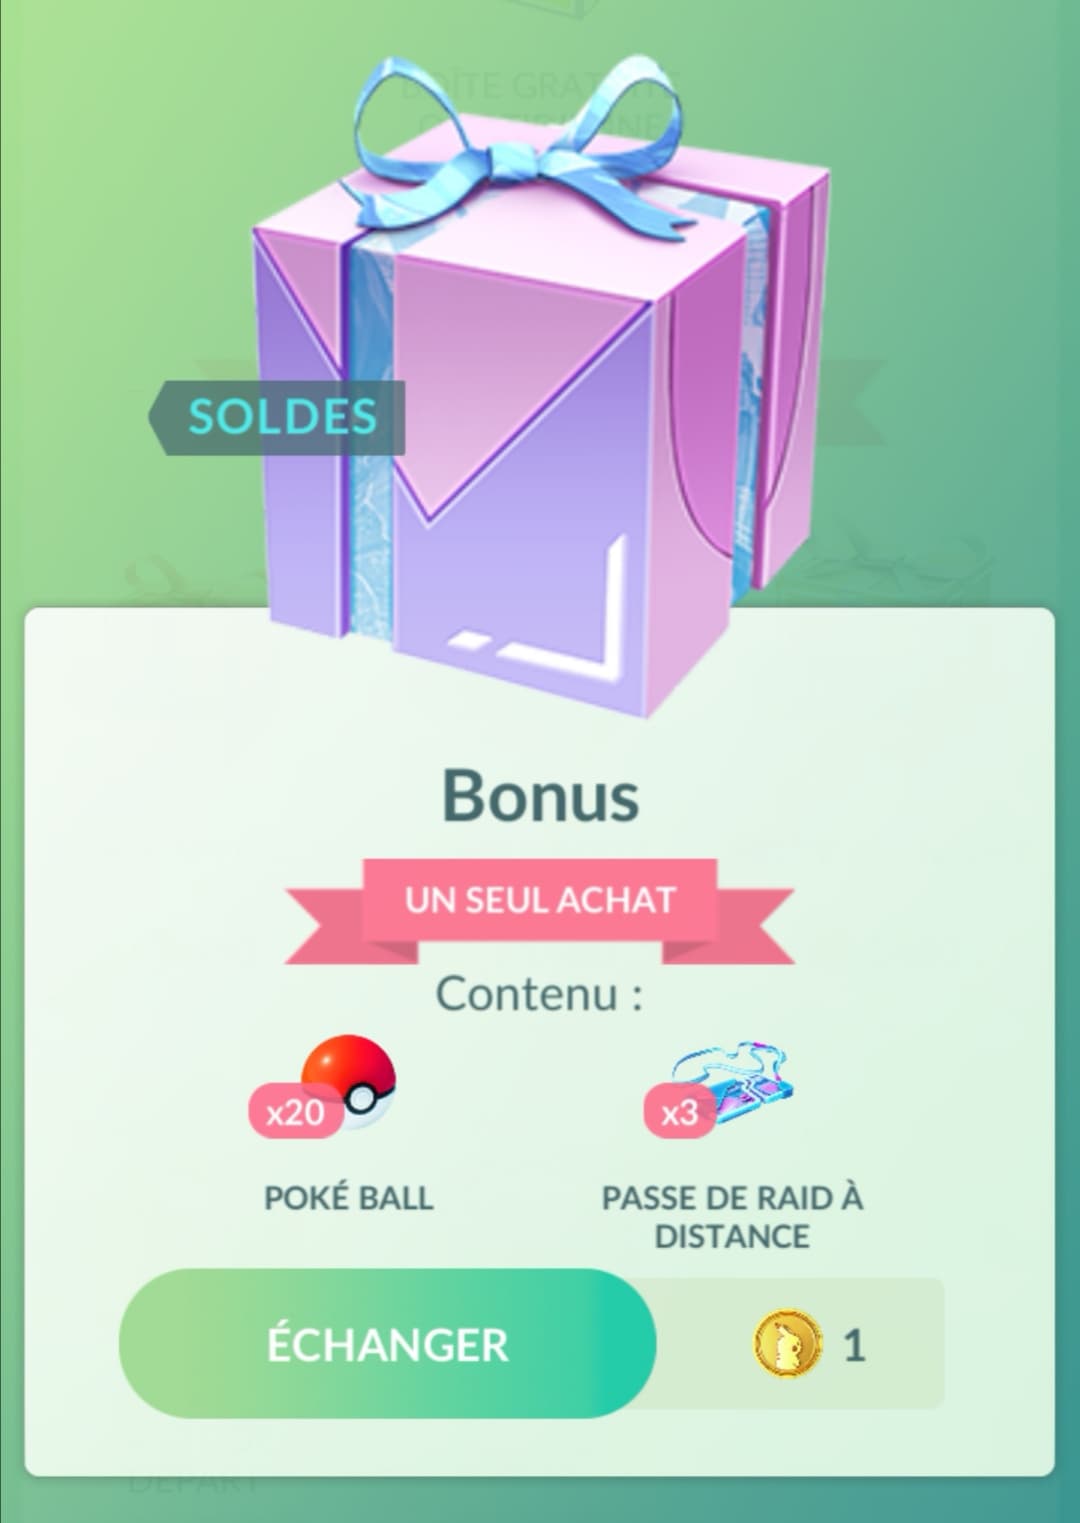 Boîte cadeau en promo sur Pokémon GO : 20 Poké Ball et 3 Passes de Raid à distance